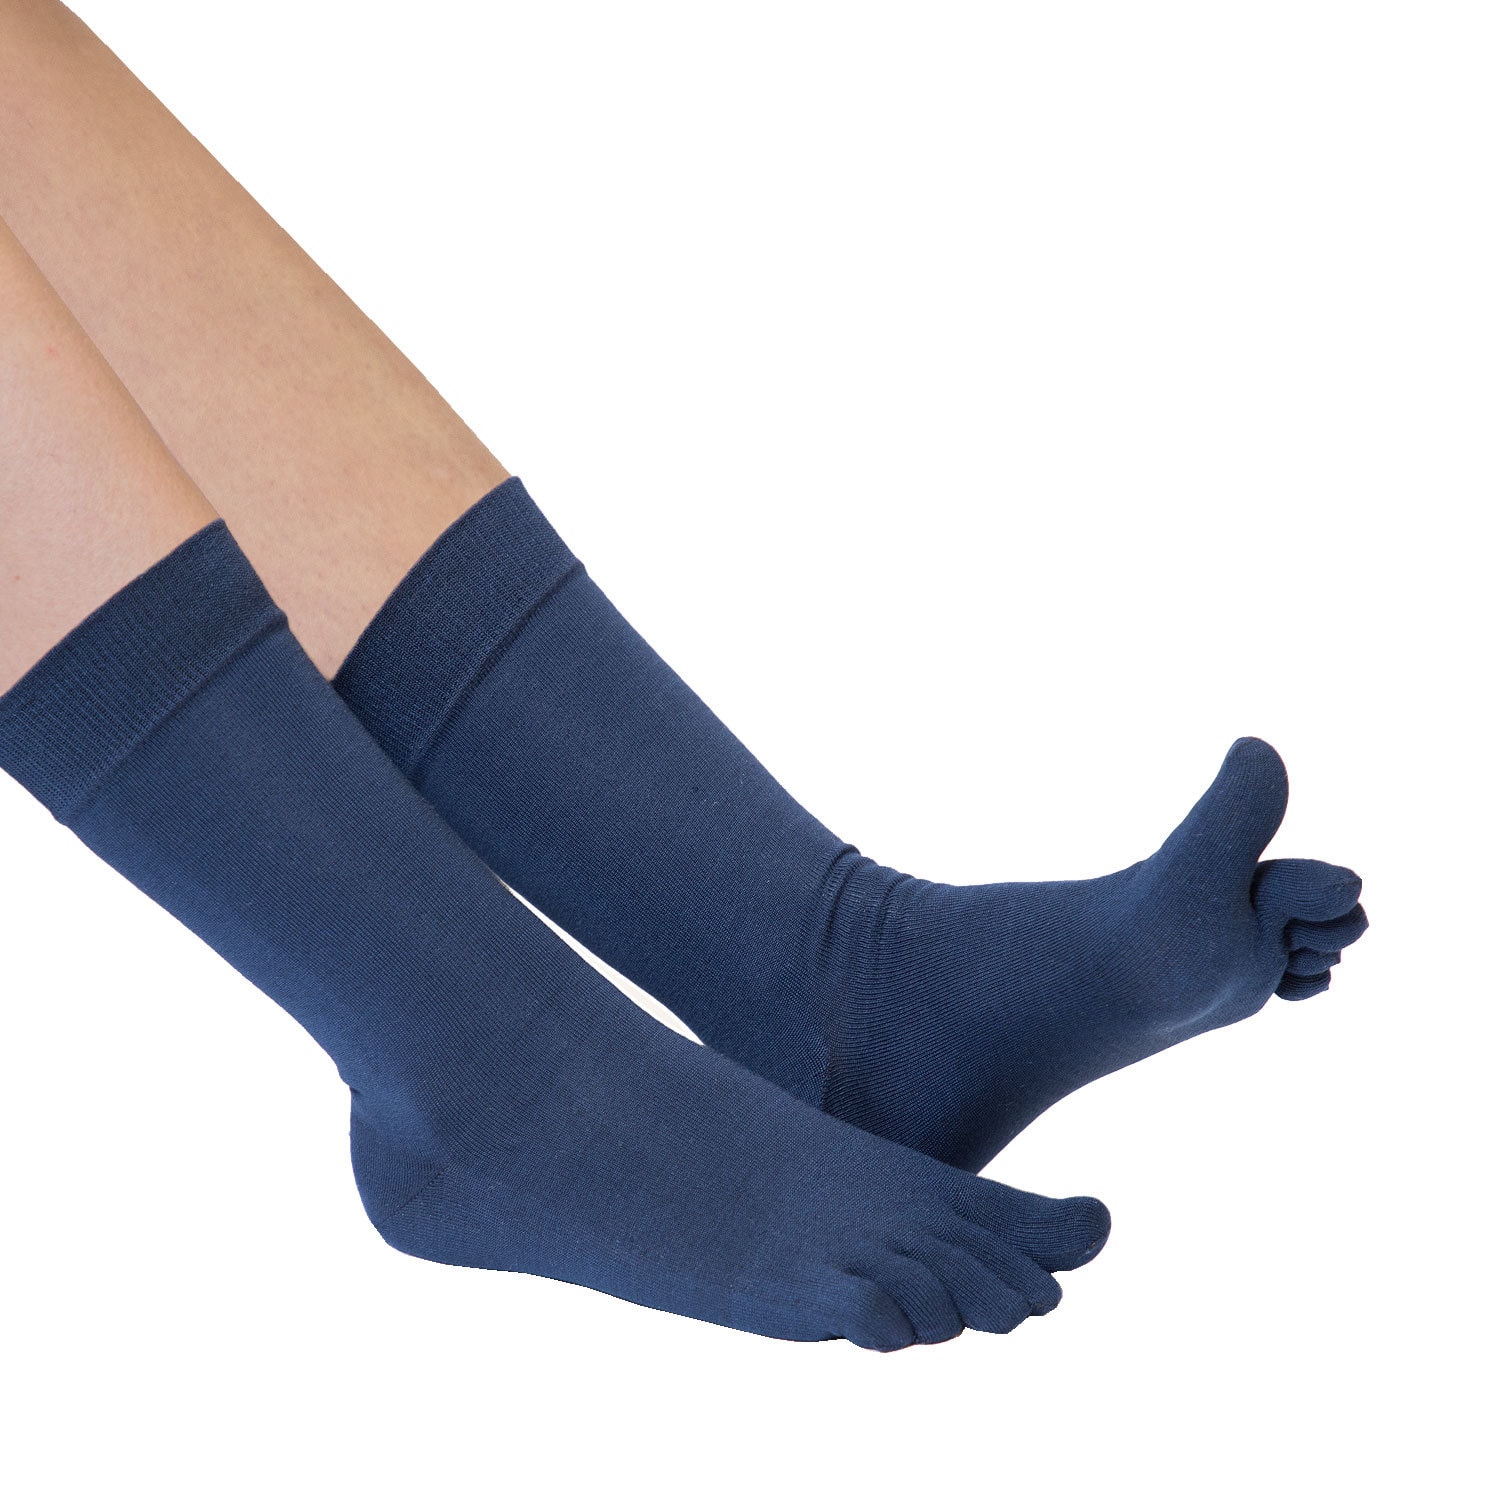 Buy Silk Socks Mens Online In India -  India